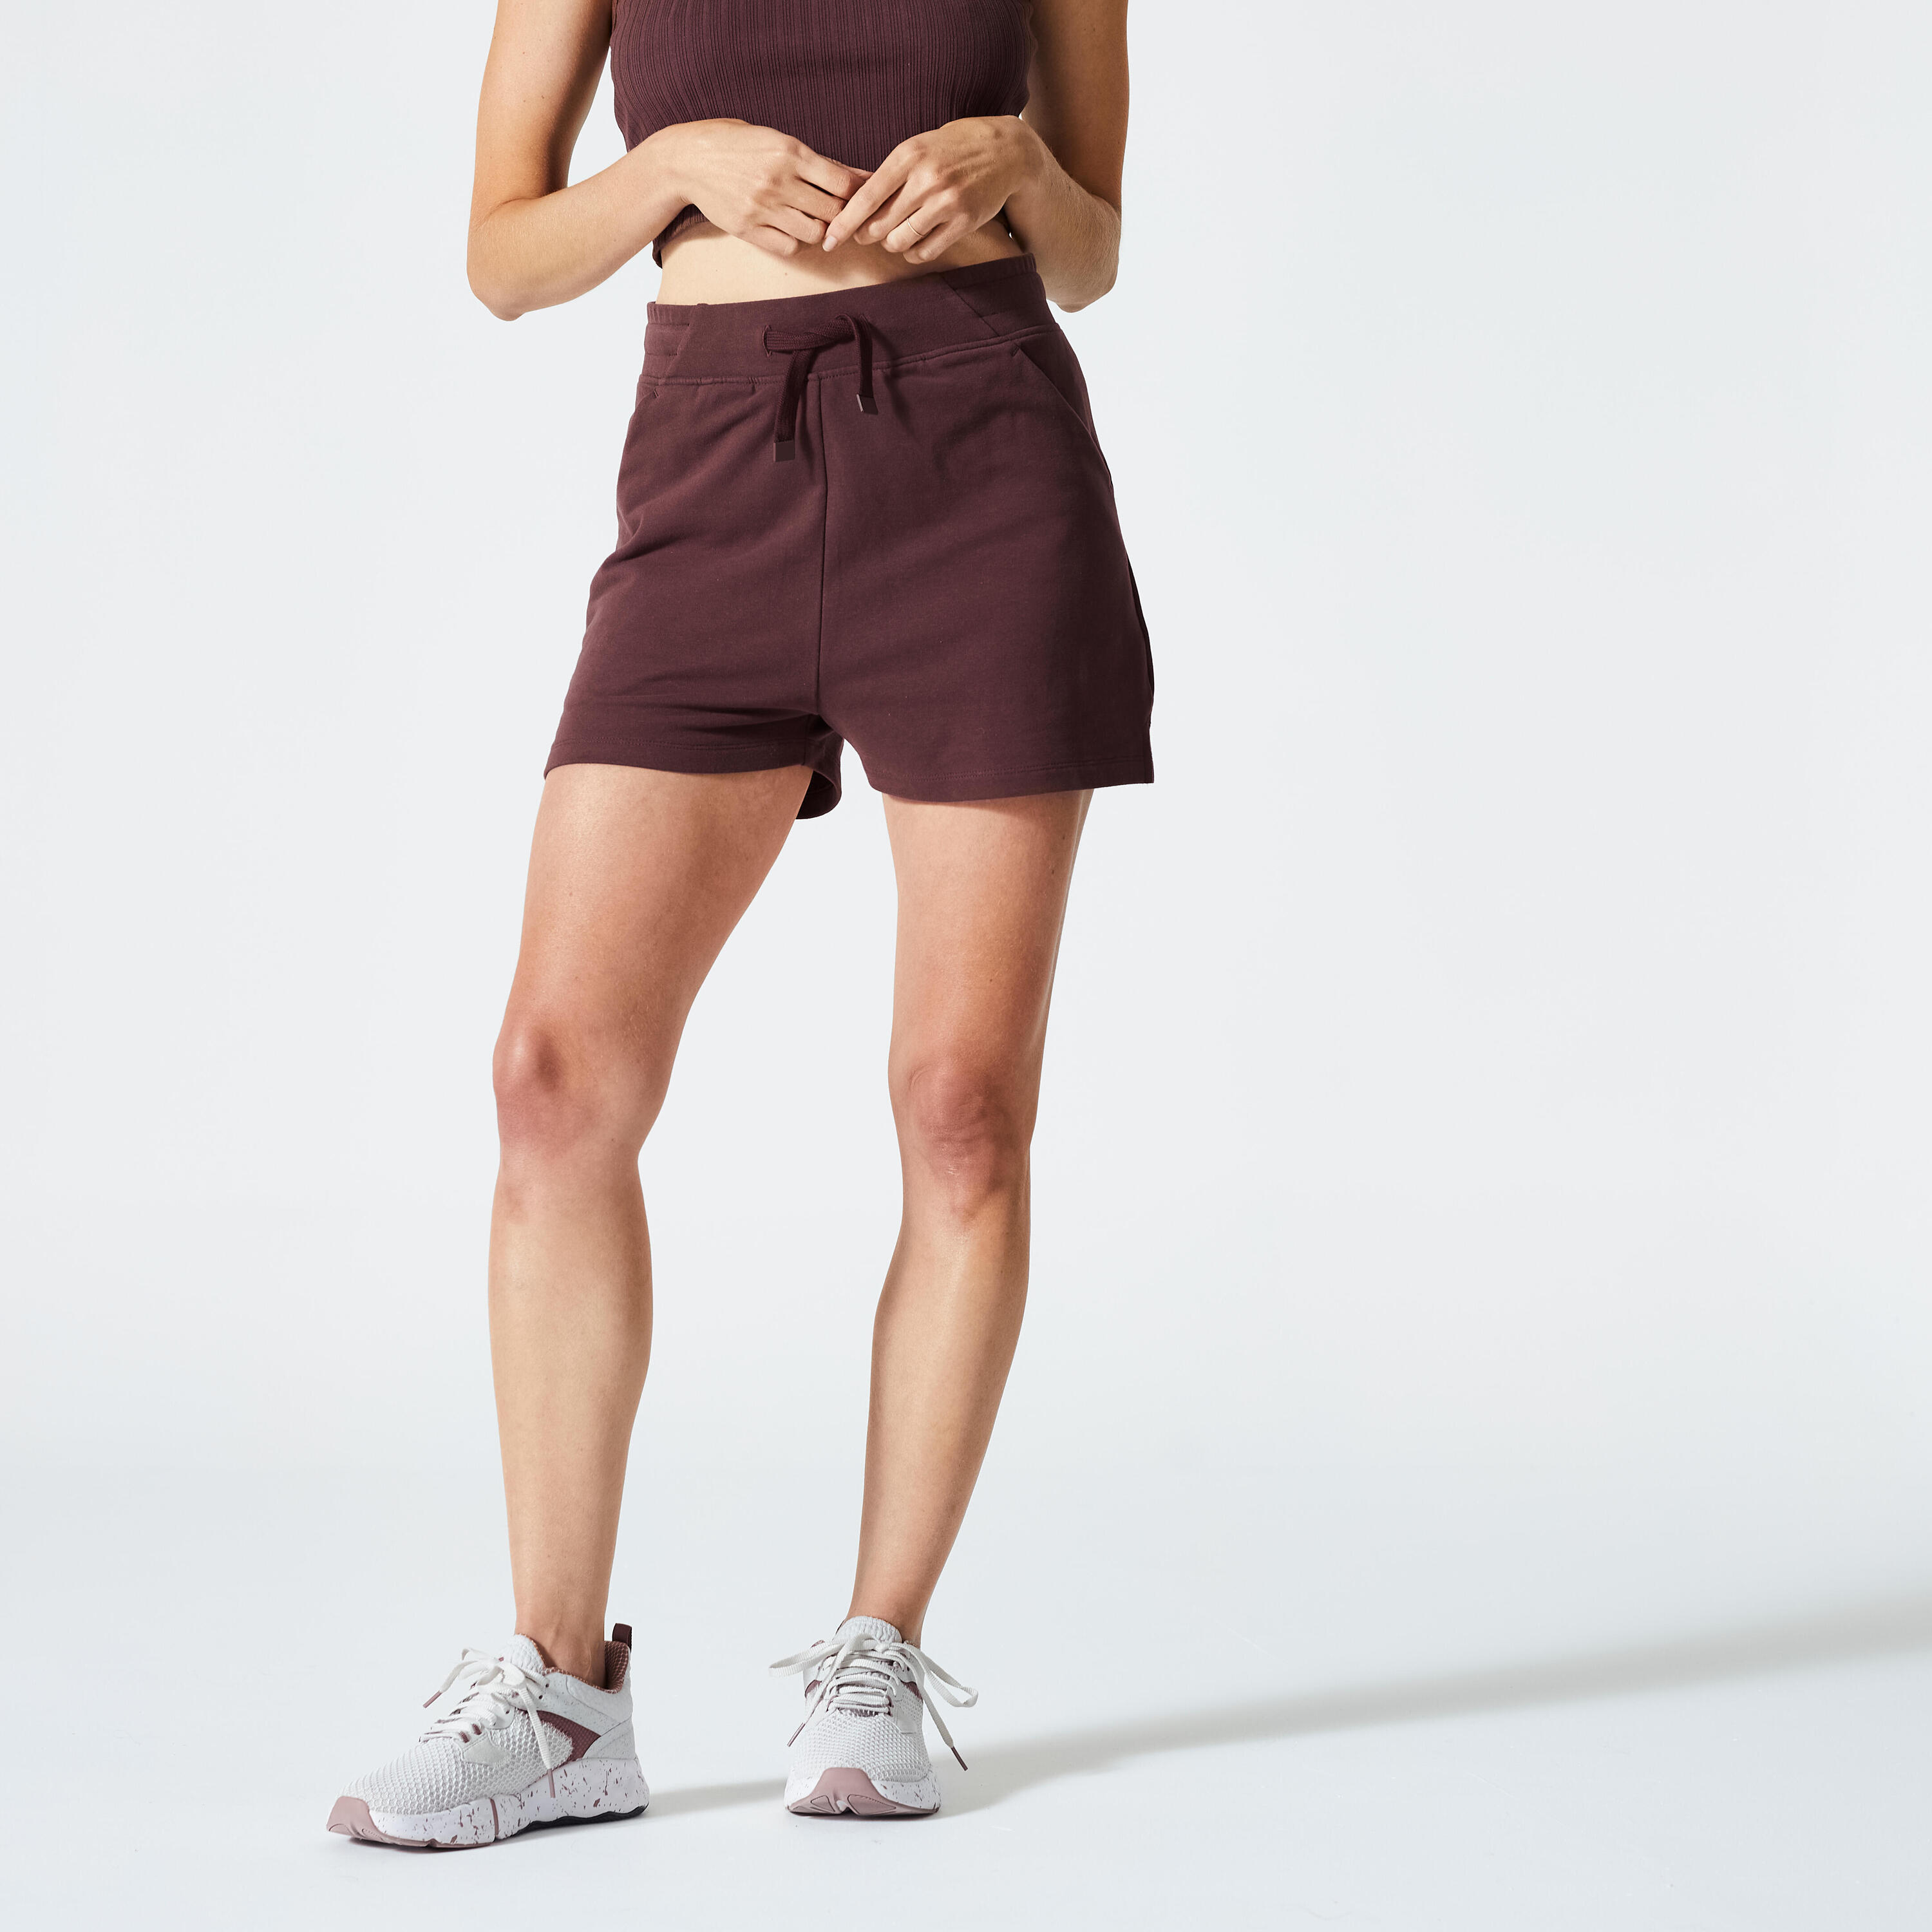 DOMYOS Women's Fitness Cotton Shorts 520 with Pocket - Mahogany Brown